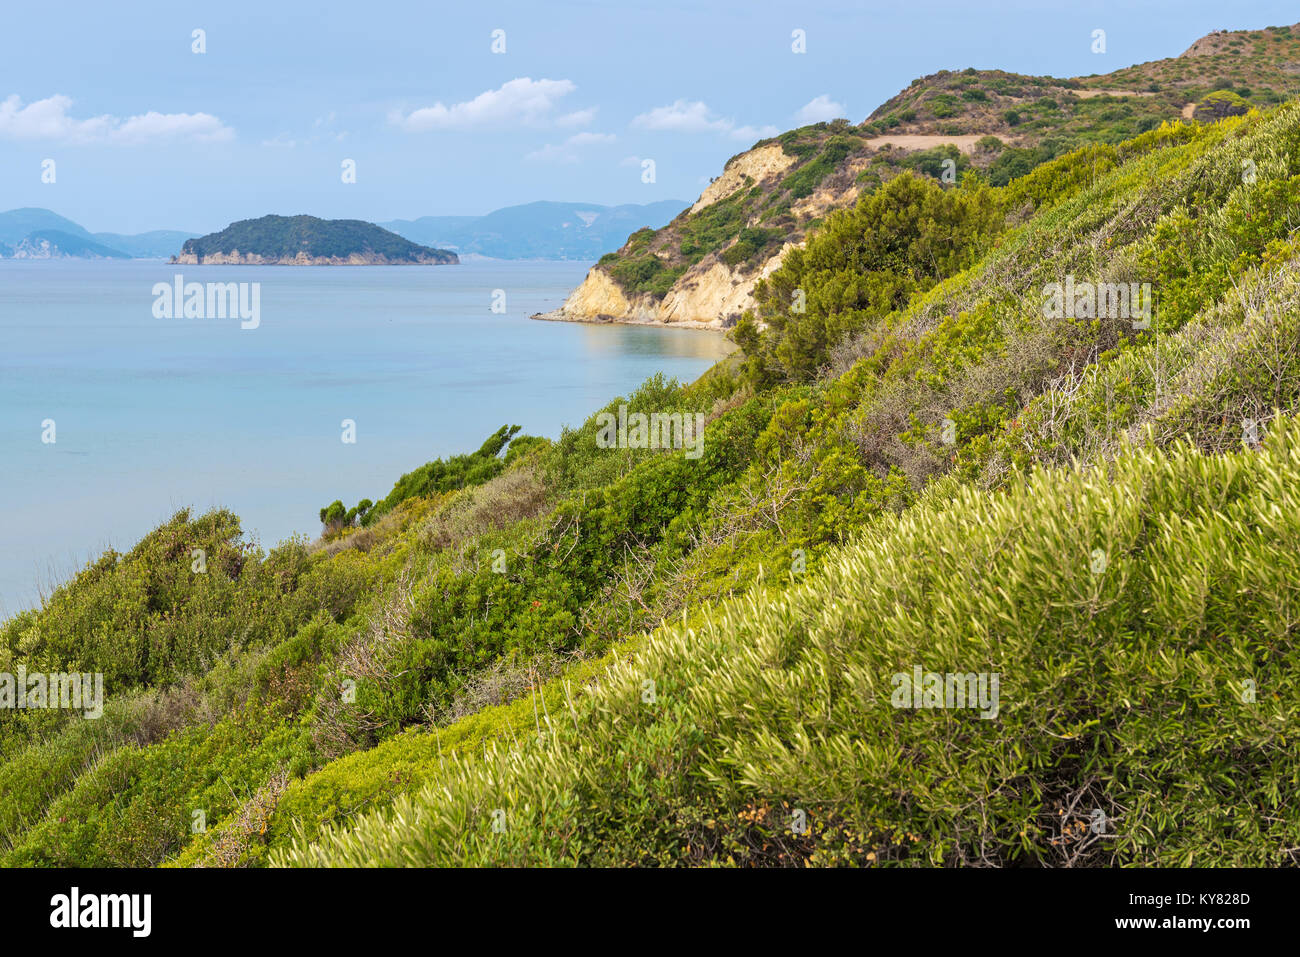 Plage de Gerakas, une des plus belles plages de Zakynthos pour ses eaux turquoises. La Grèce. Banque D'Images